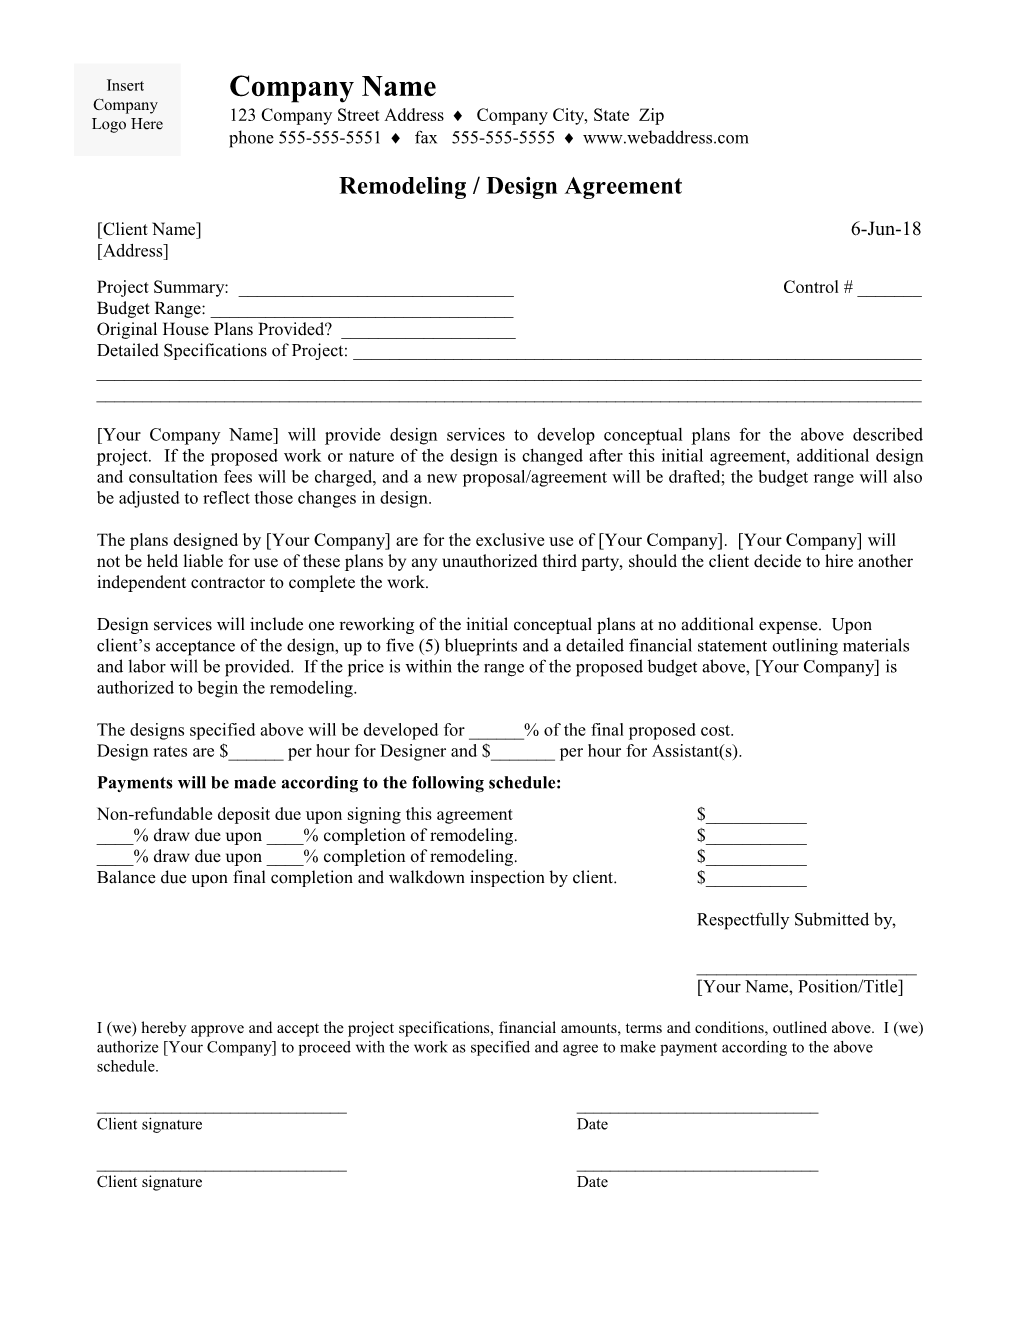 Remodeling / Design Agreement